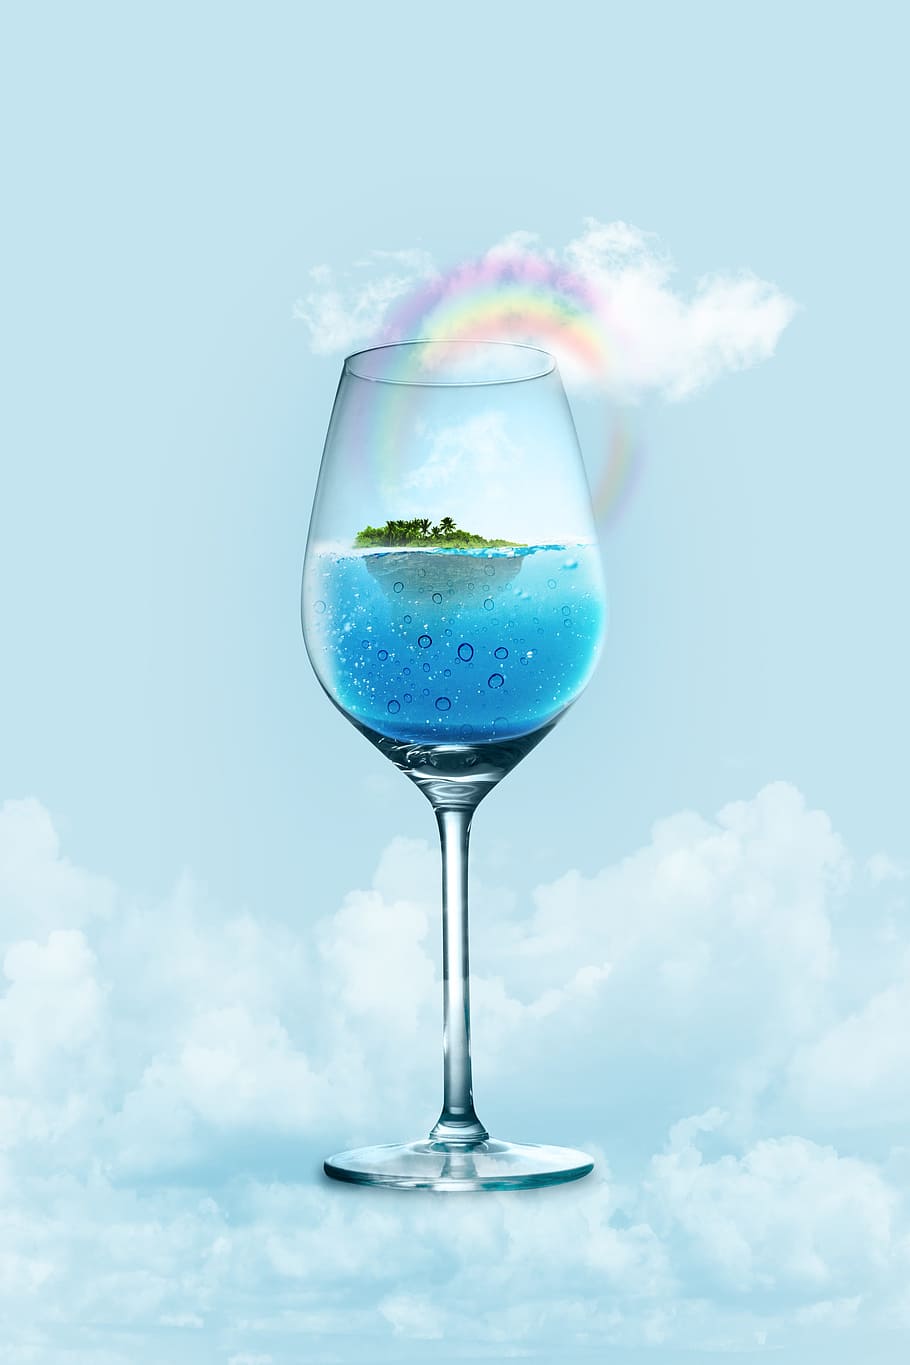 agua, beber, vidro, transparente, macio, refrigerado, comida e bebida, refresco, nuvem - céu, ninguém